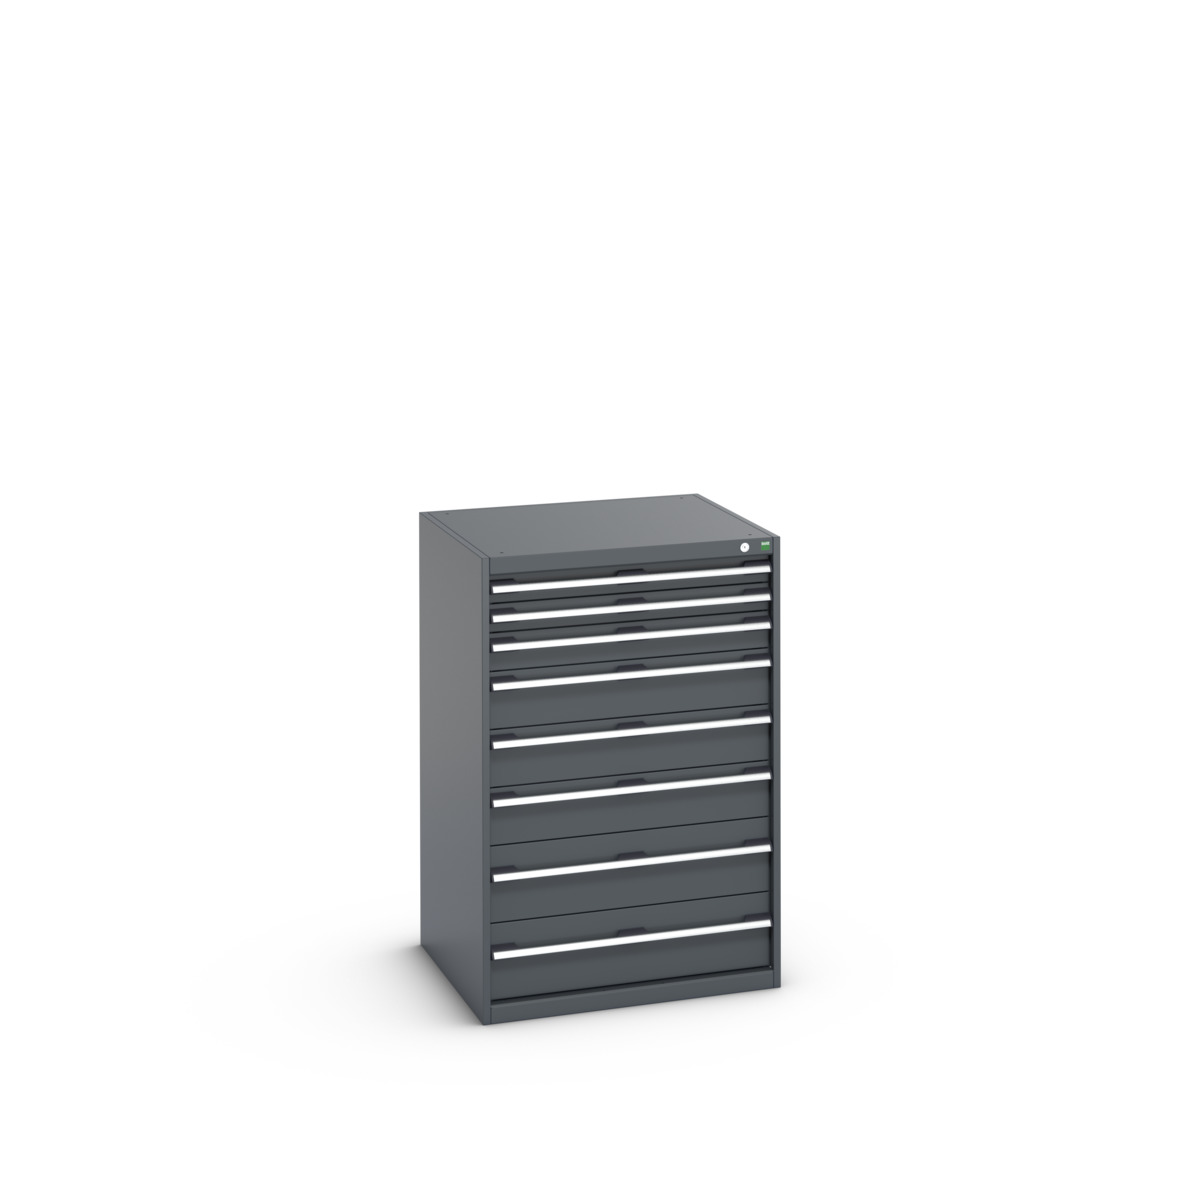 40028034.77V - cubio drawer cabinet